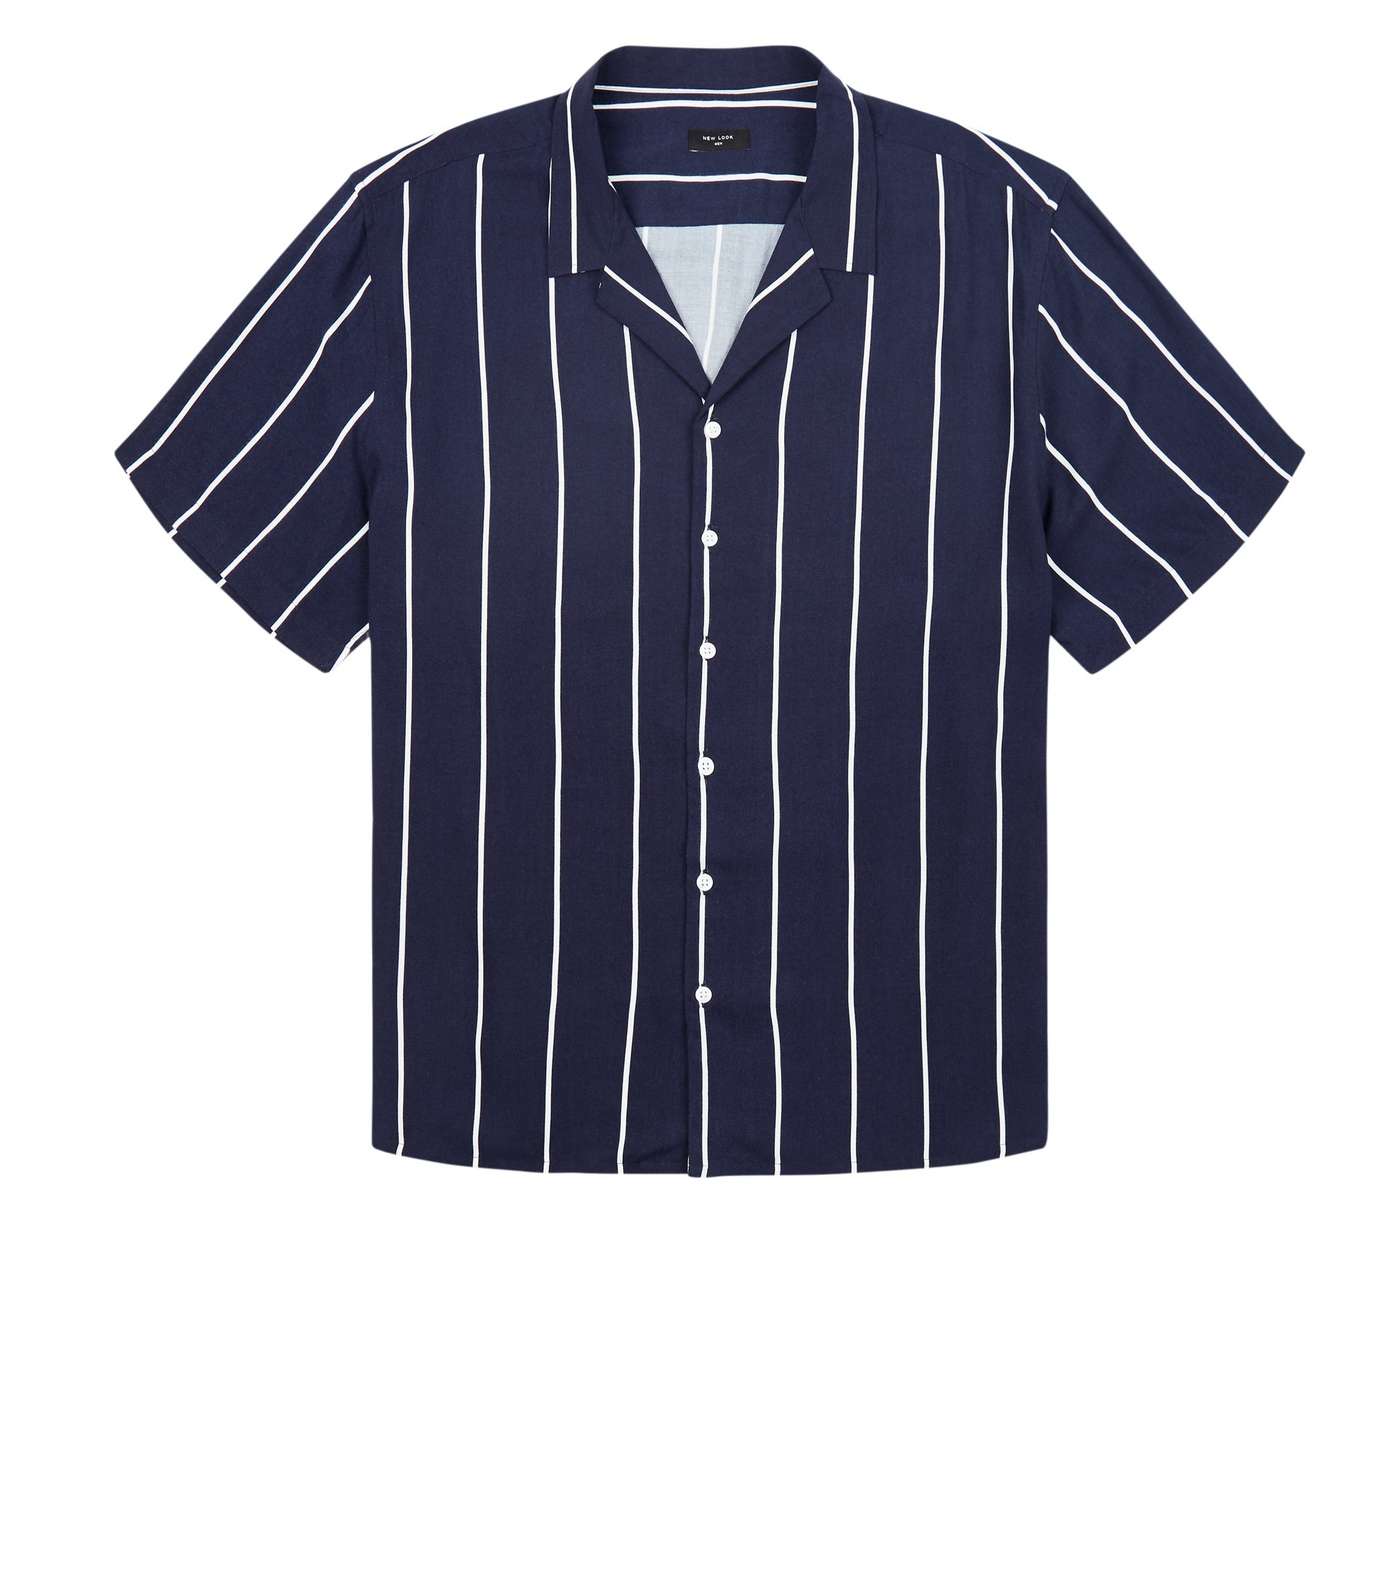 Plus Size Navy Stripe Short Sleeve Shirt Image 4